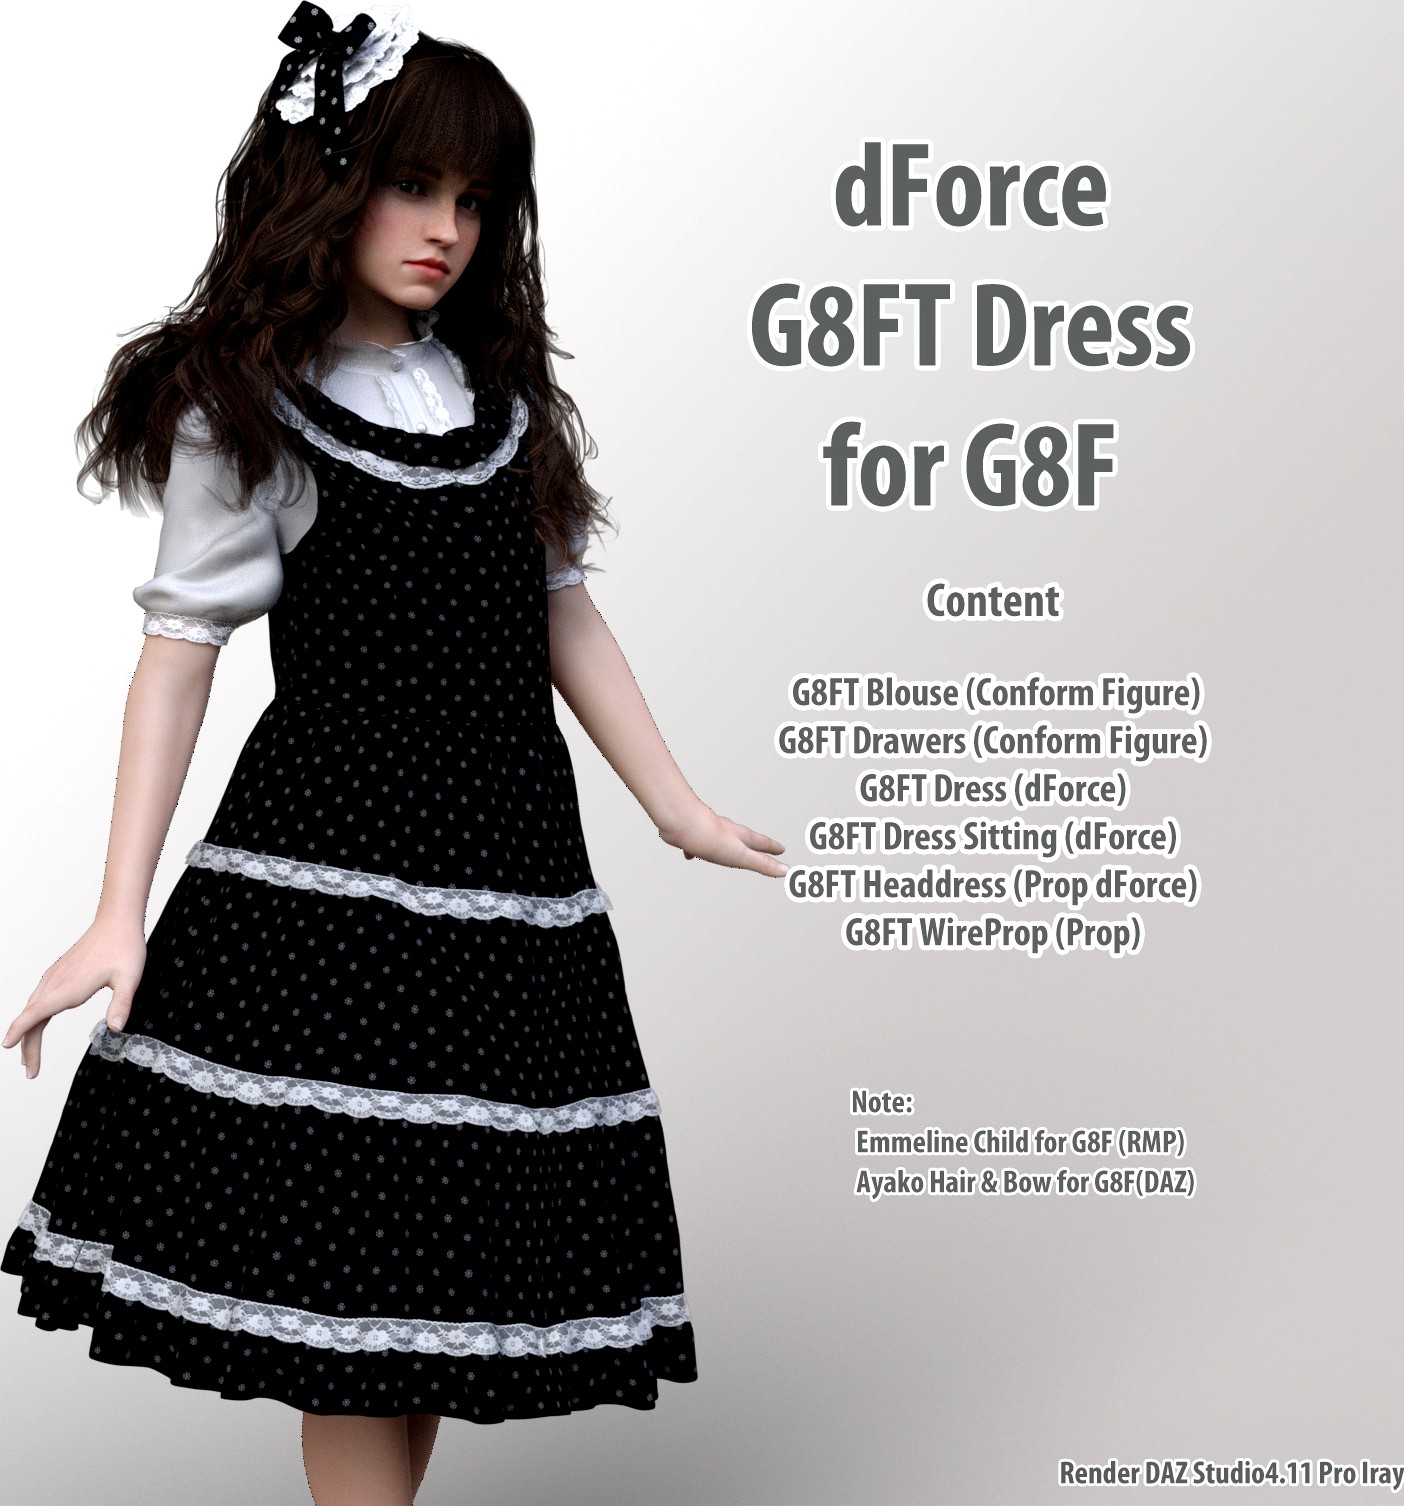 dForce G8FT Dress for G8F